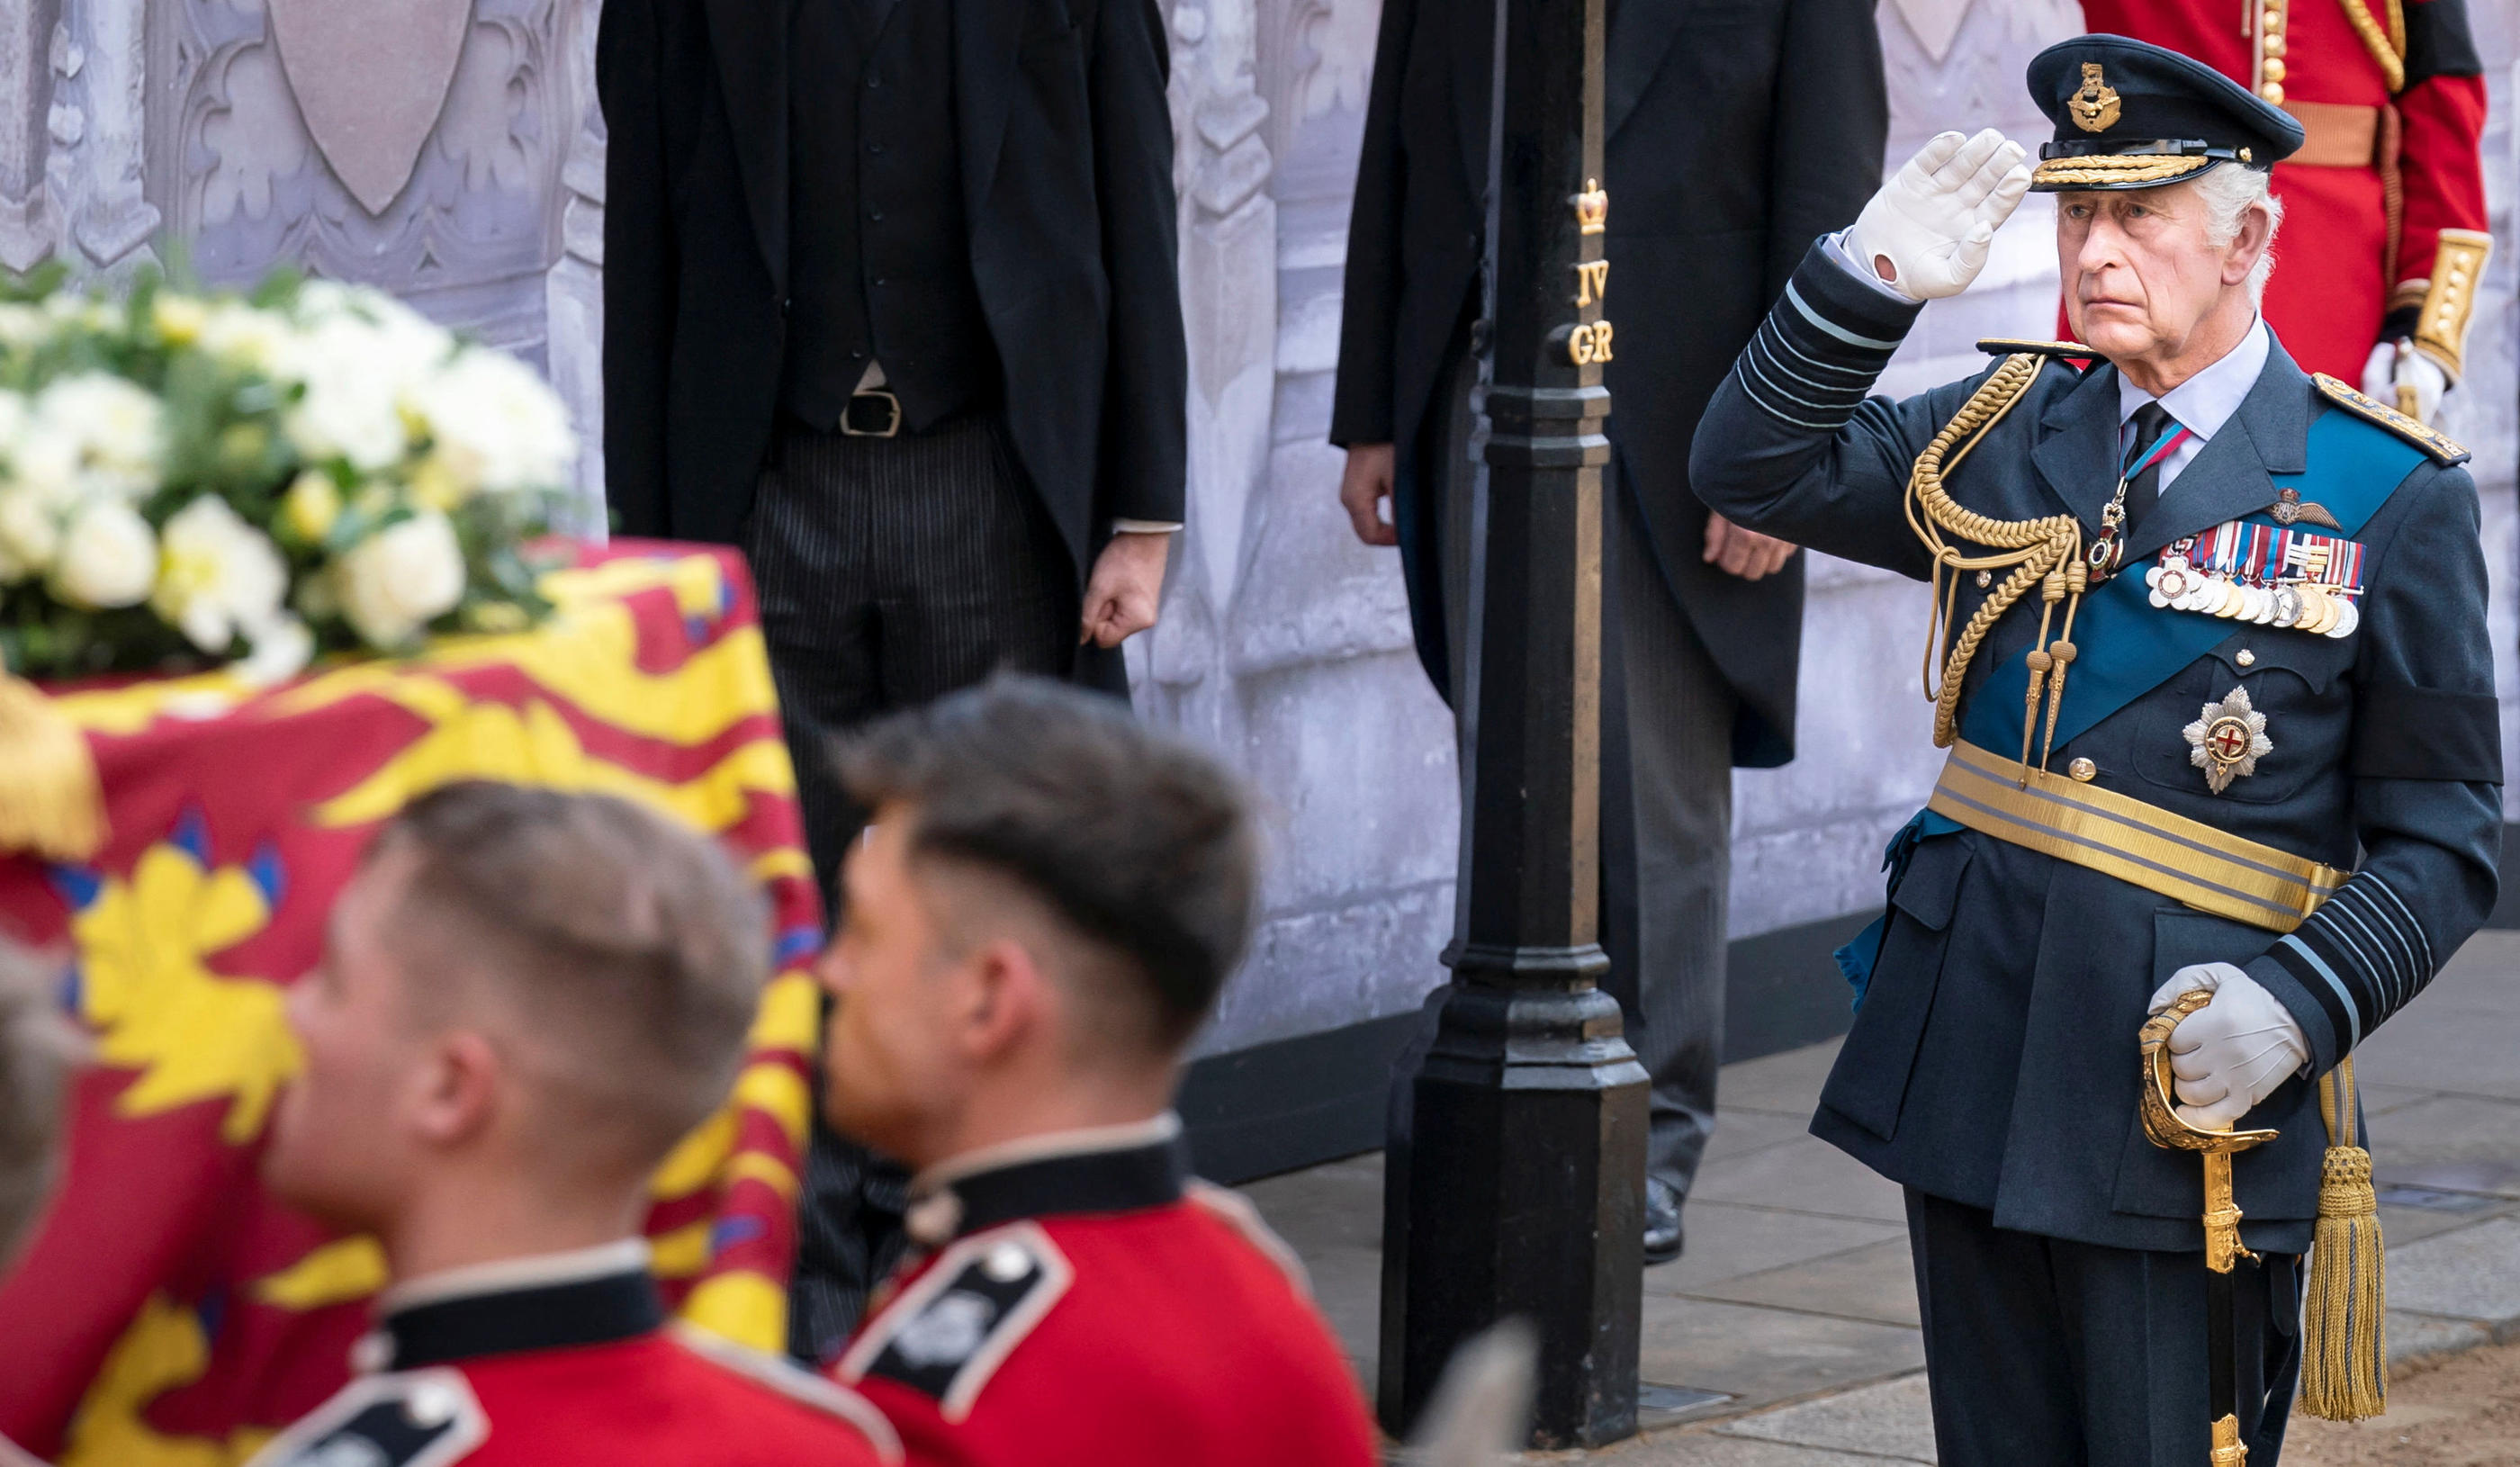 Le roi Charles III se rendra à Cardiff ce vendredi, avant de retourner à Londres, où il est attendu près du cercueil de sa mère dans la soirée. Reuters/Danny Lawson